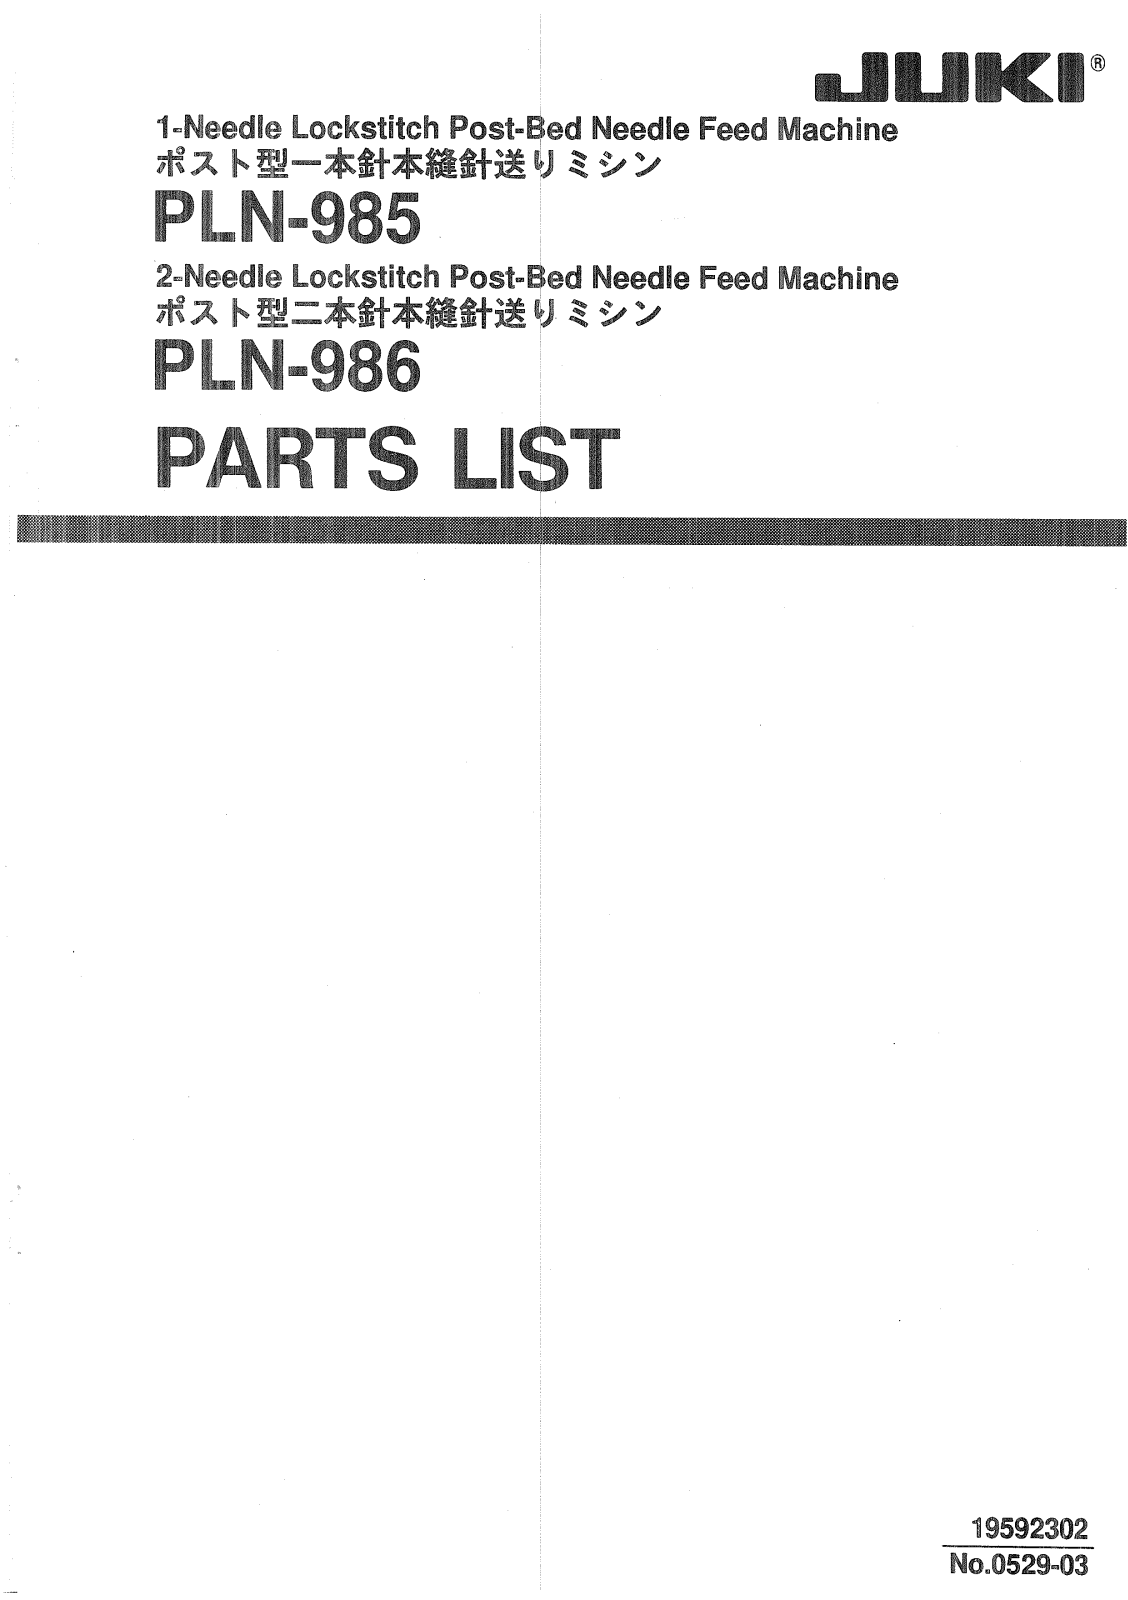 Juki PLN-985, PLN-986 Parts List